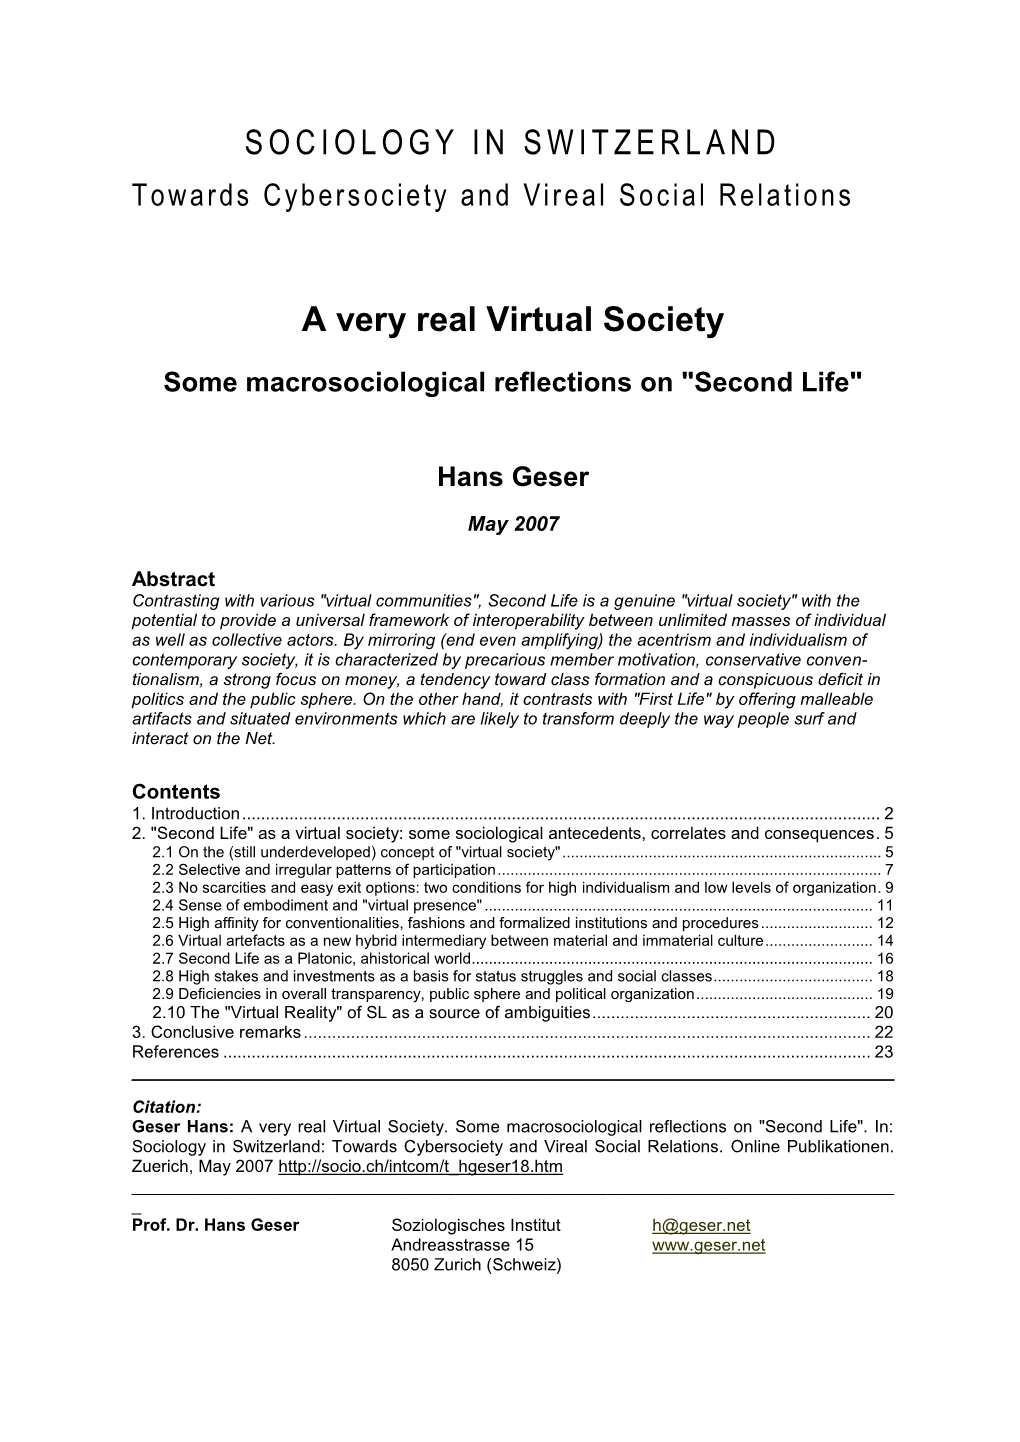 As a Virtual Society: Some Sociological Antecedents, Correlates and Consequences